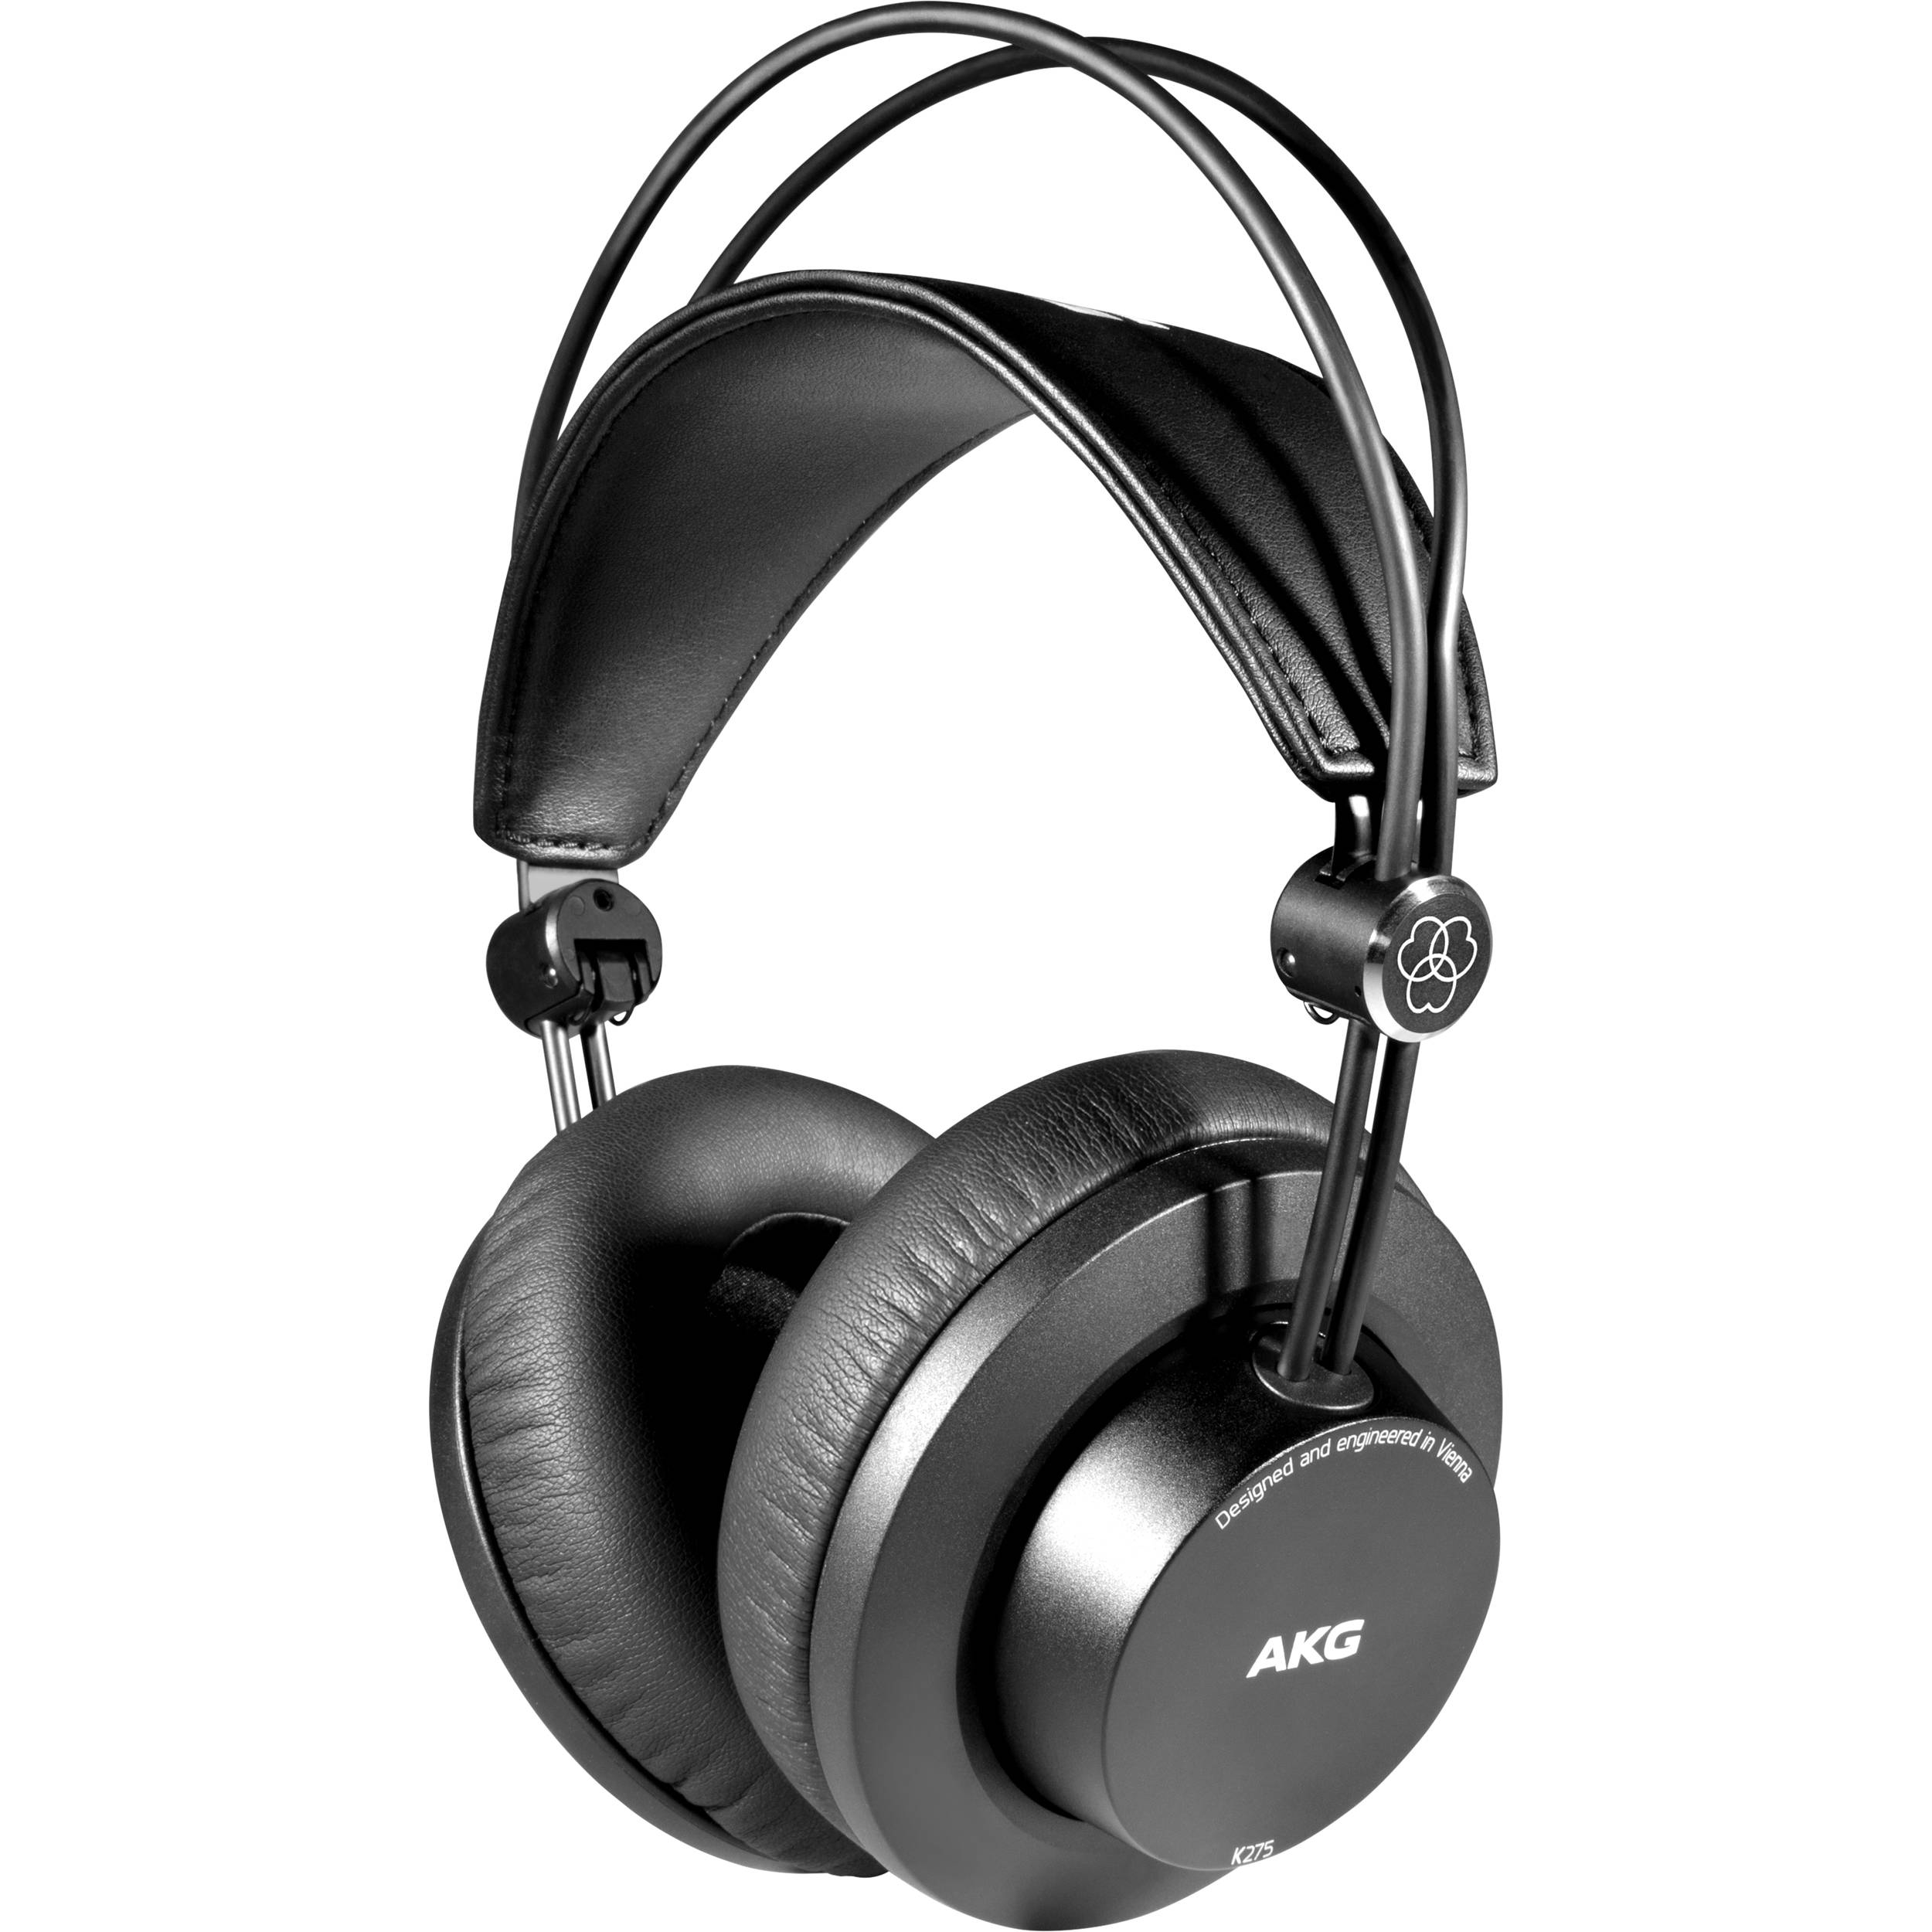 AKG AKG K275 Foldable Over-Ear Headphones | Australia's #1 Music Store